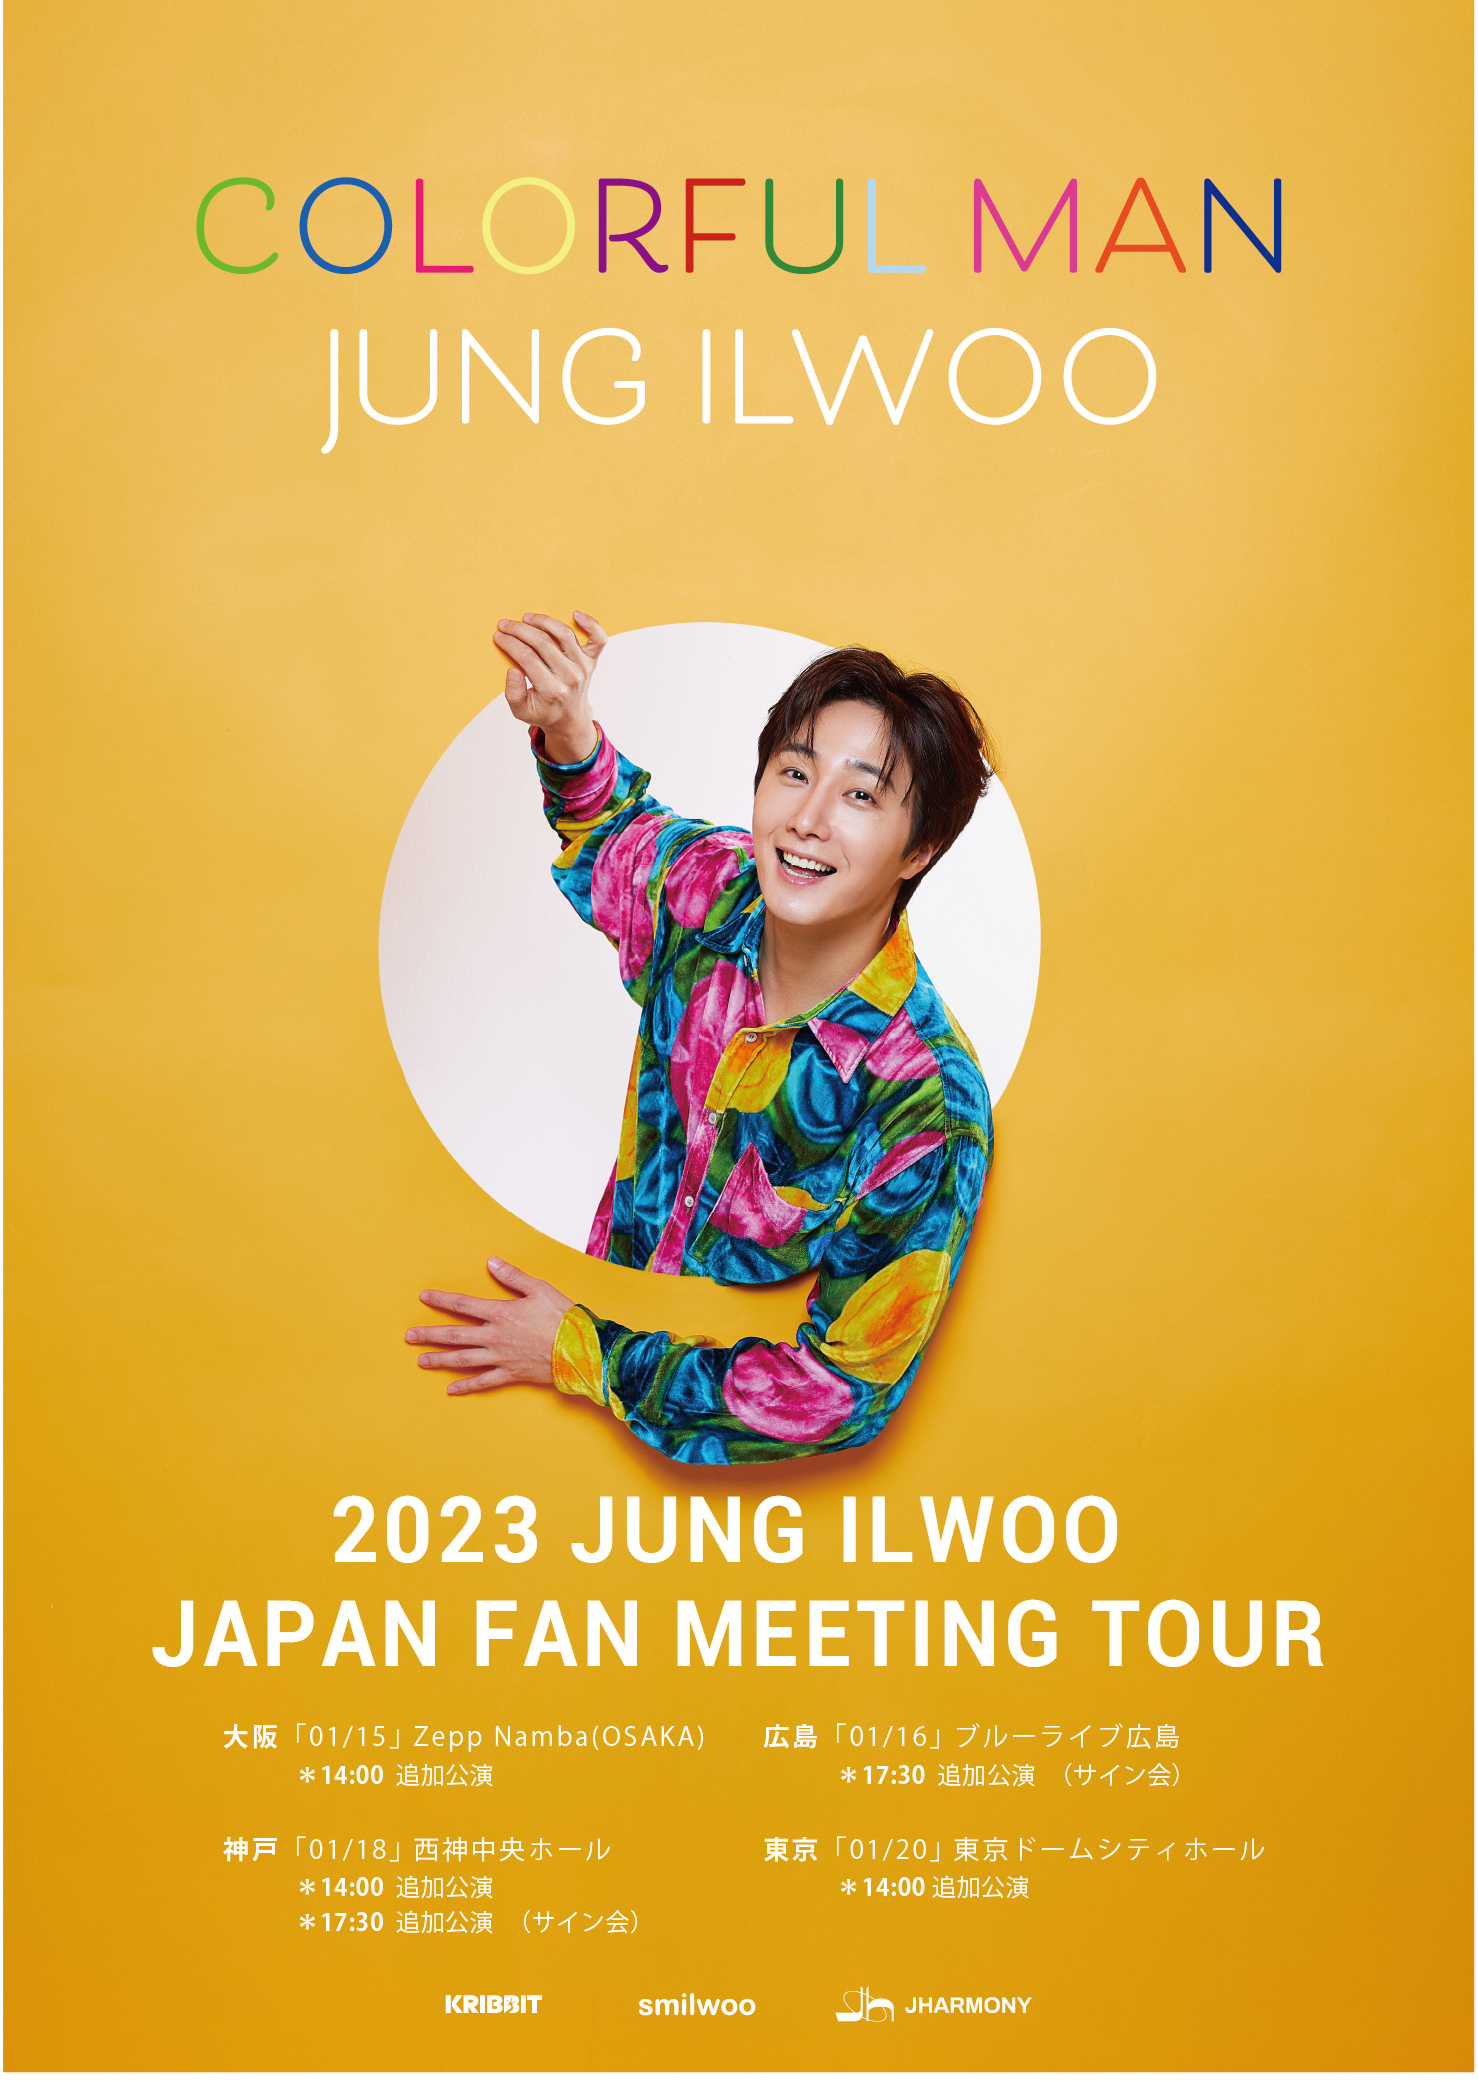 チョン・イル追加公演 2023 JUNG IL WOO JAPAN FAN MEETING TOUR 